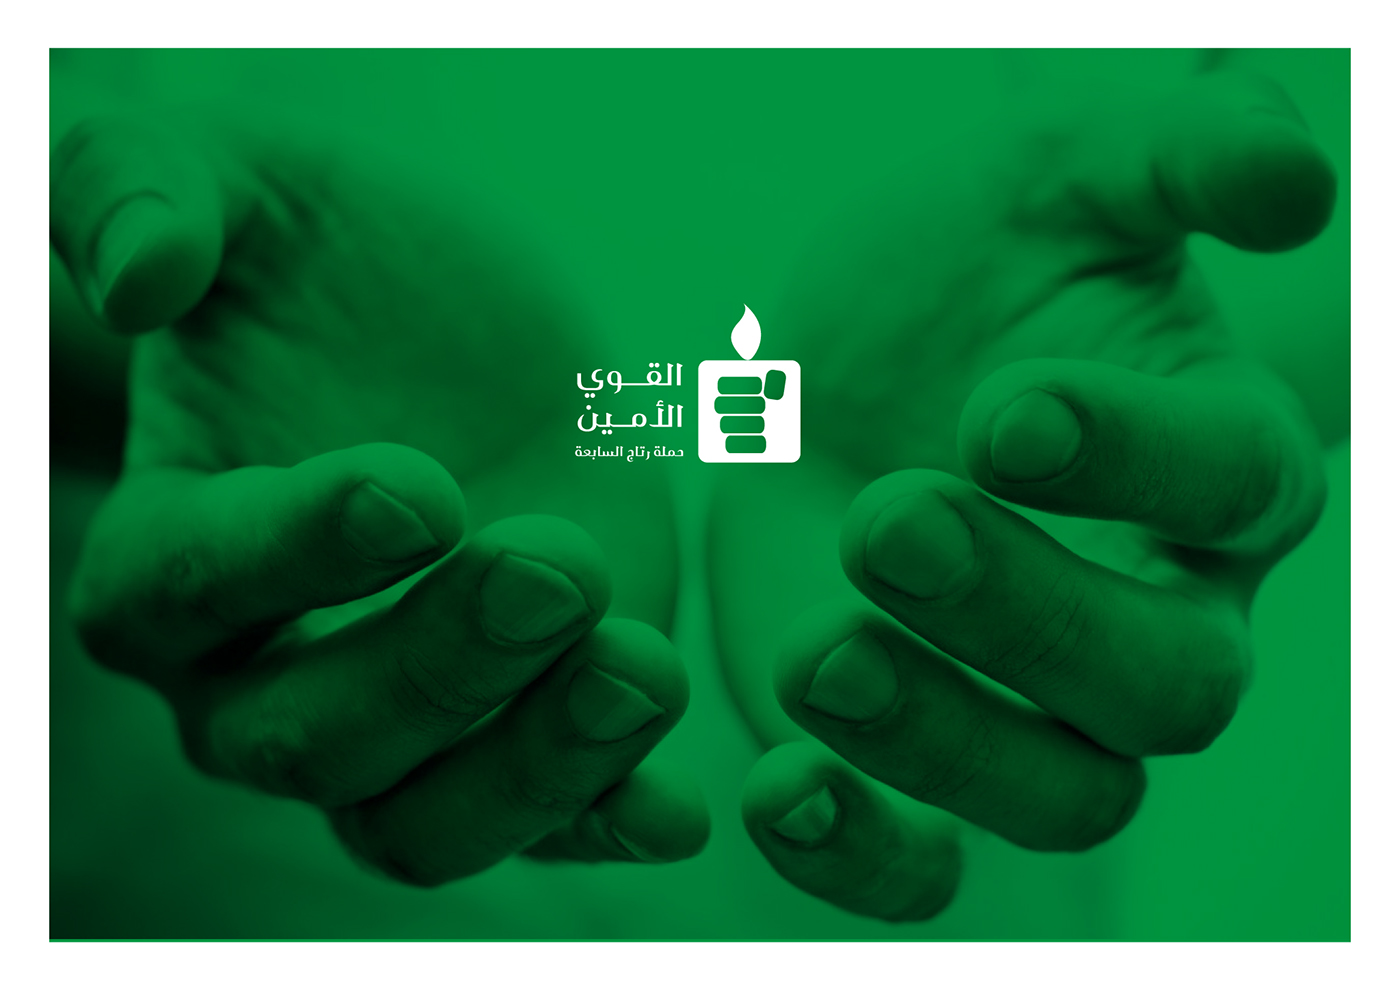 القوى الأمين لوجو شعار عربي شعار logo logos Arabic logo charity logo